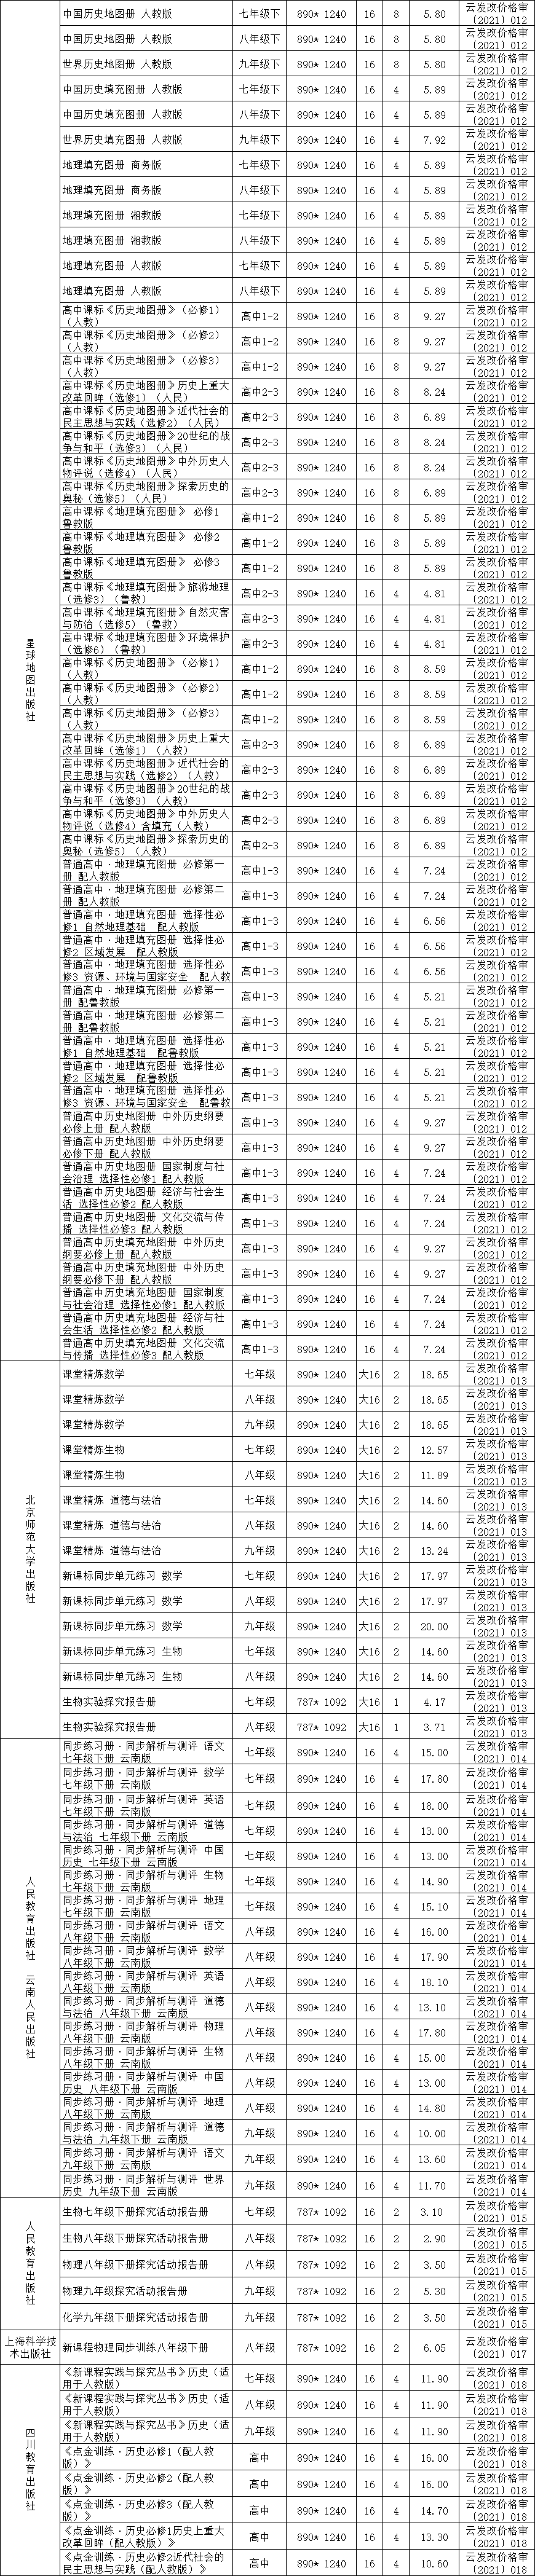 云南2021年春季中小学教辅材料零售价格公布3.png